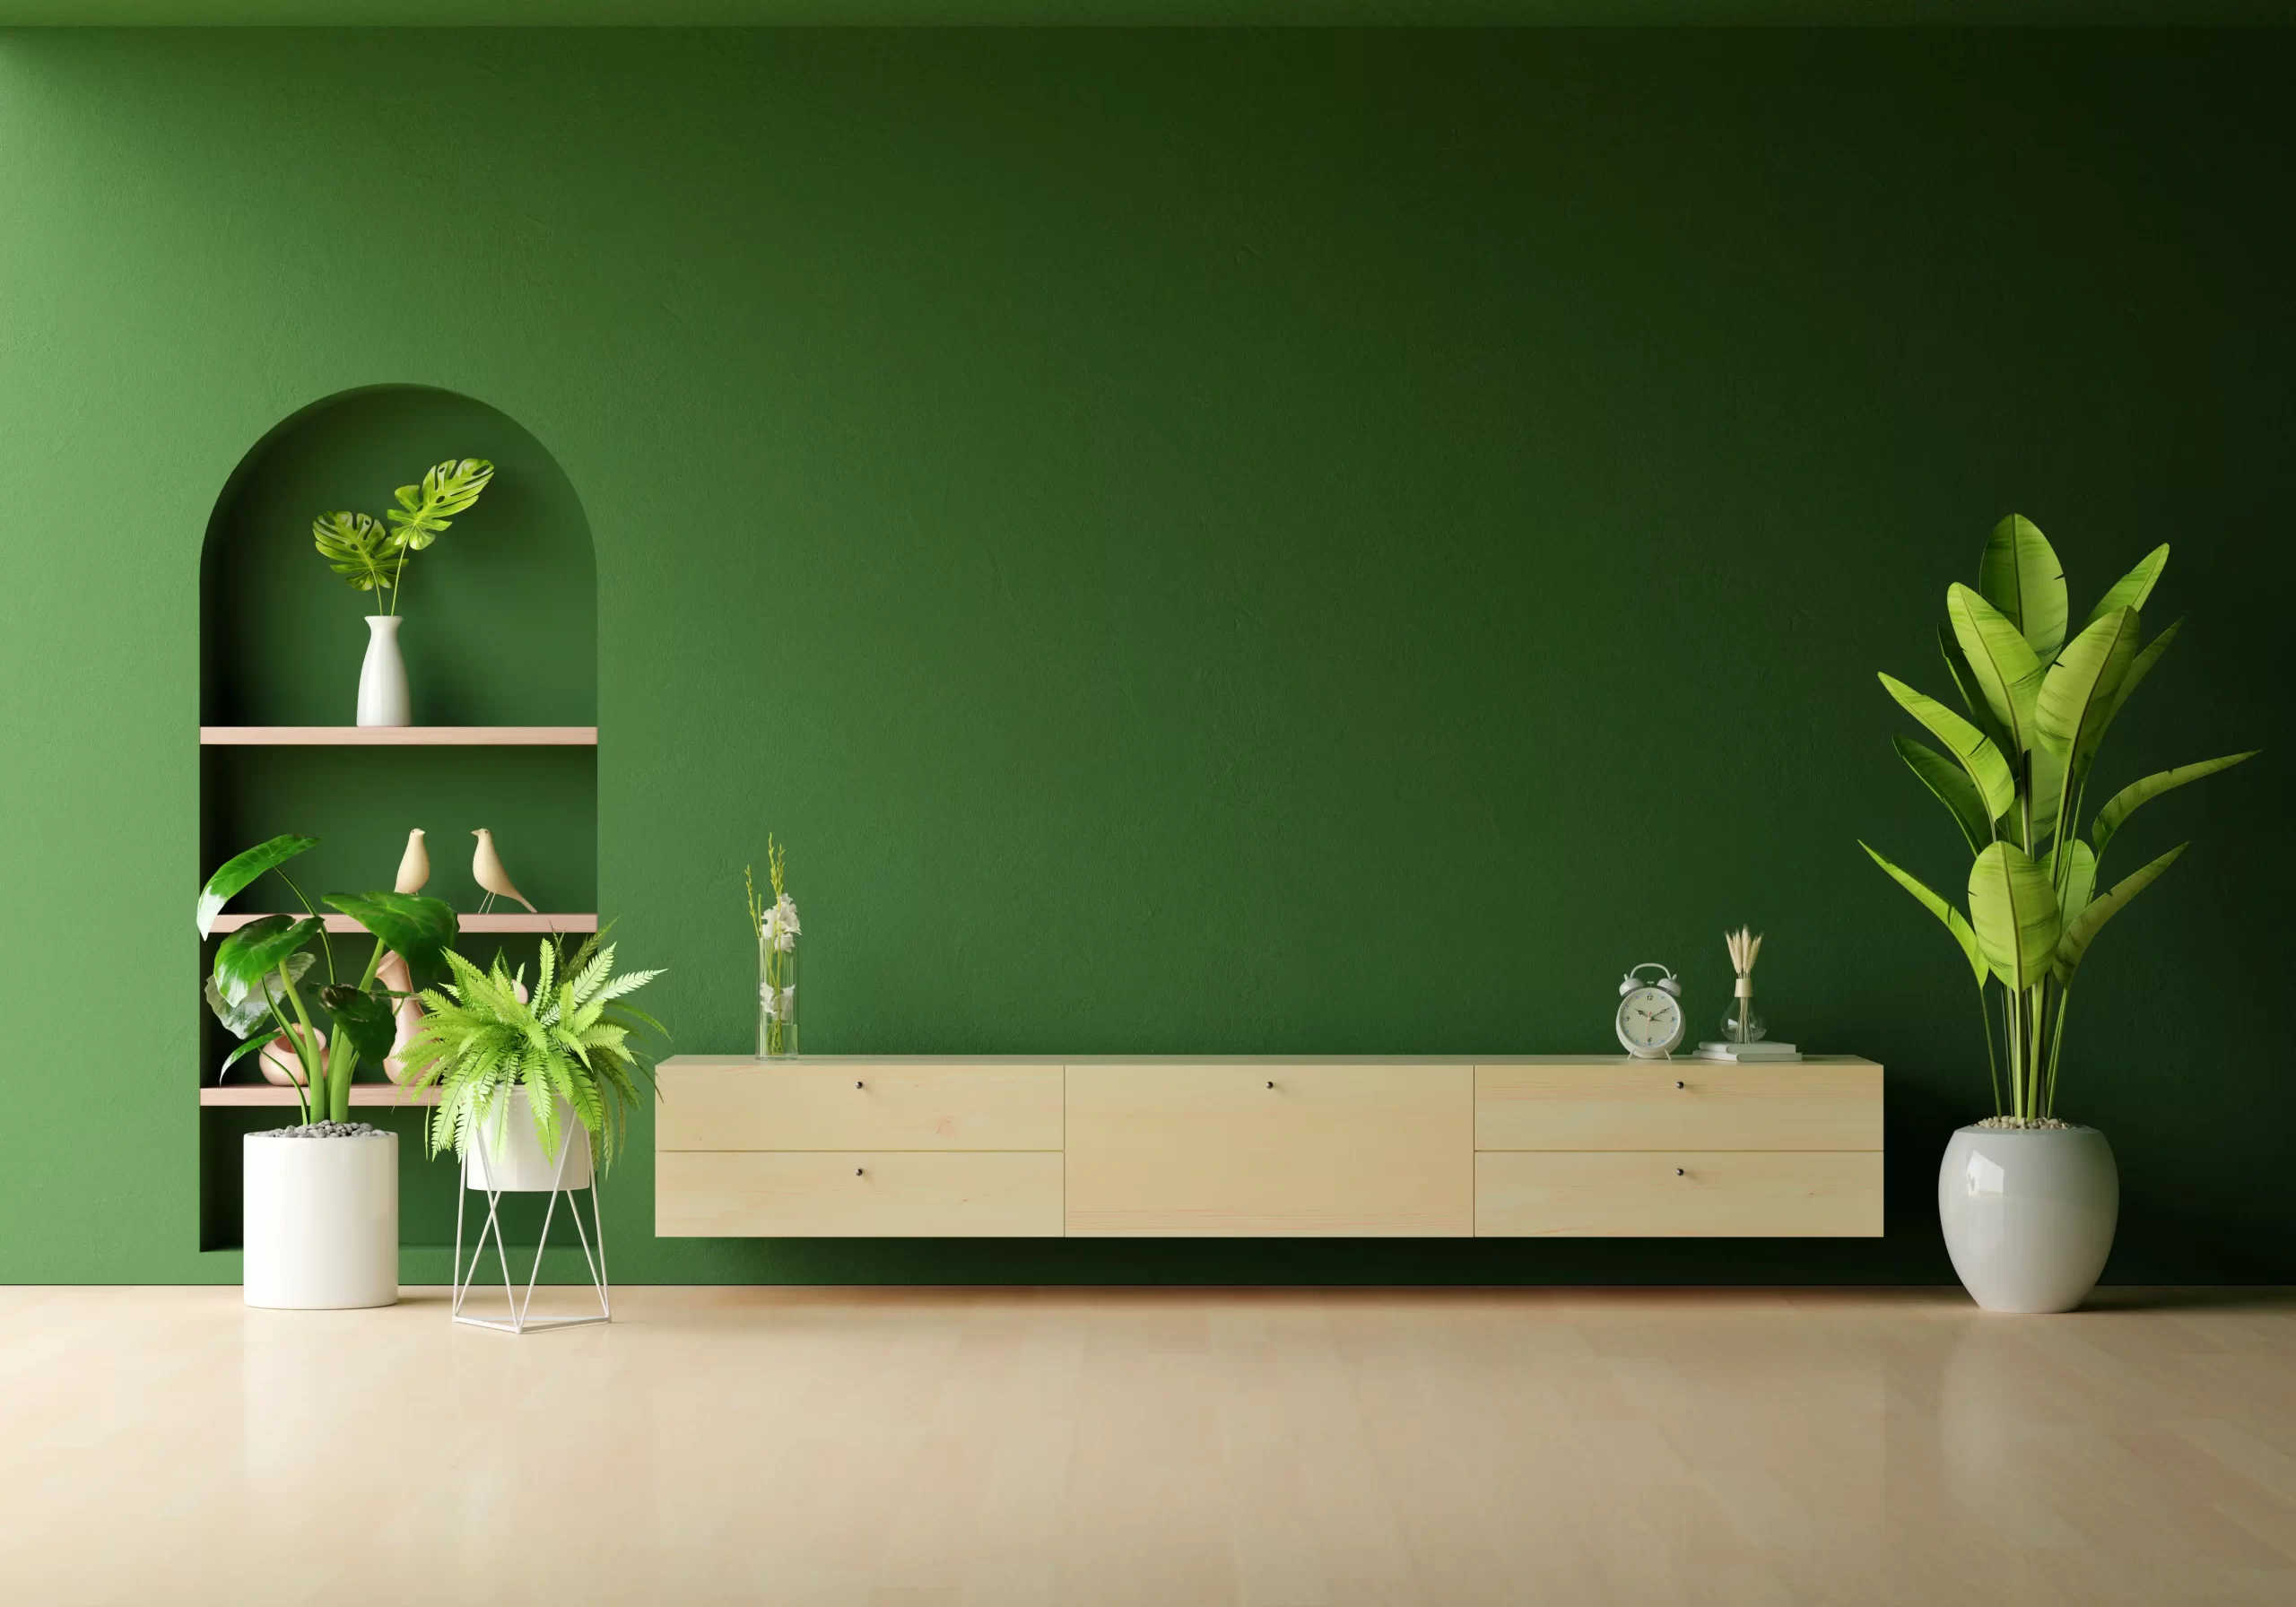 اتاقی که تم آن سبز میباشد و میز دکوری چوبی به دیوار وصل شده است و در کنار آن گل نیز قرار دارد